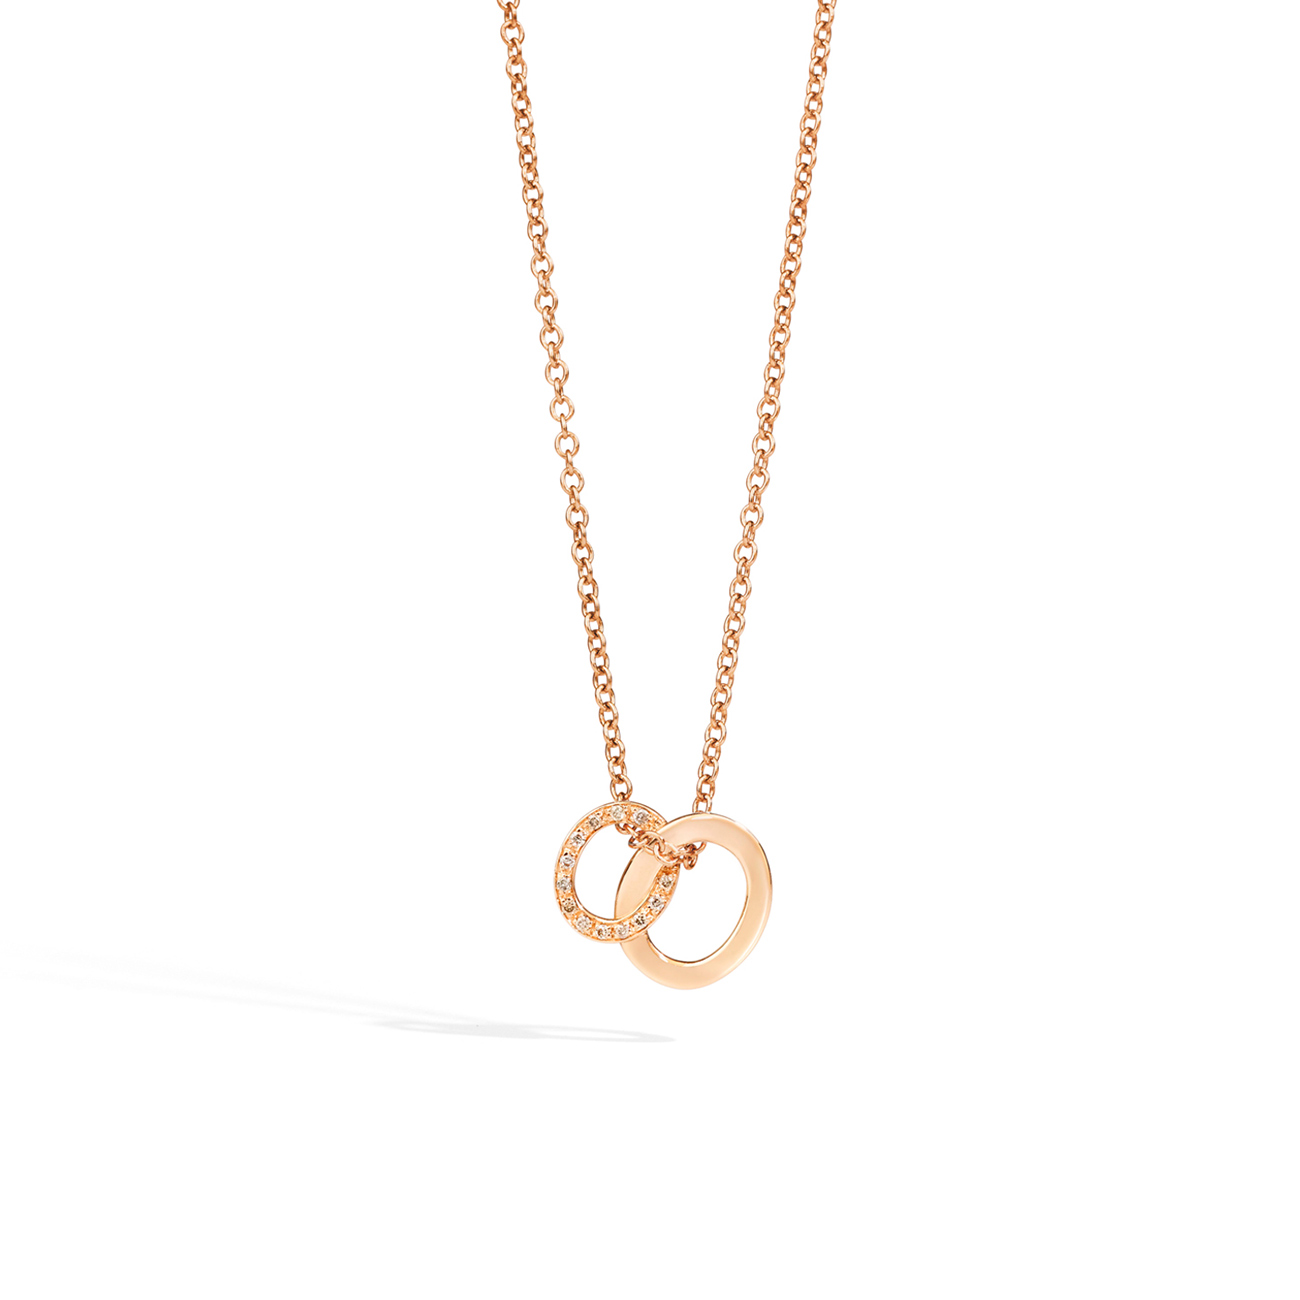 Pomellato Brera Diamond Pendant with Chain